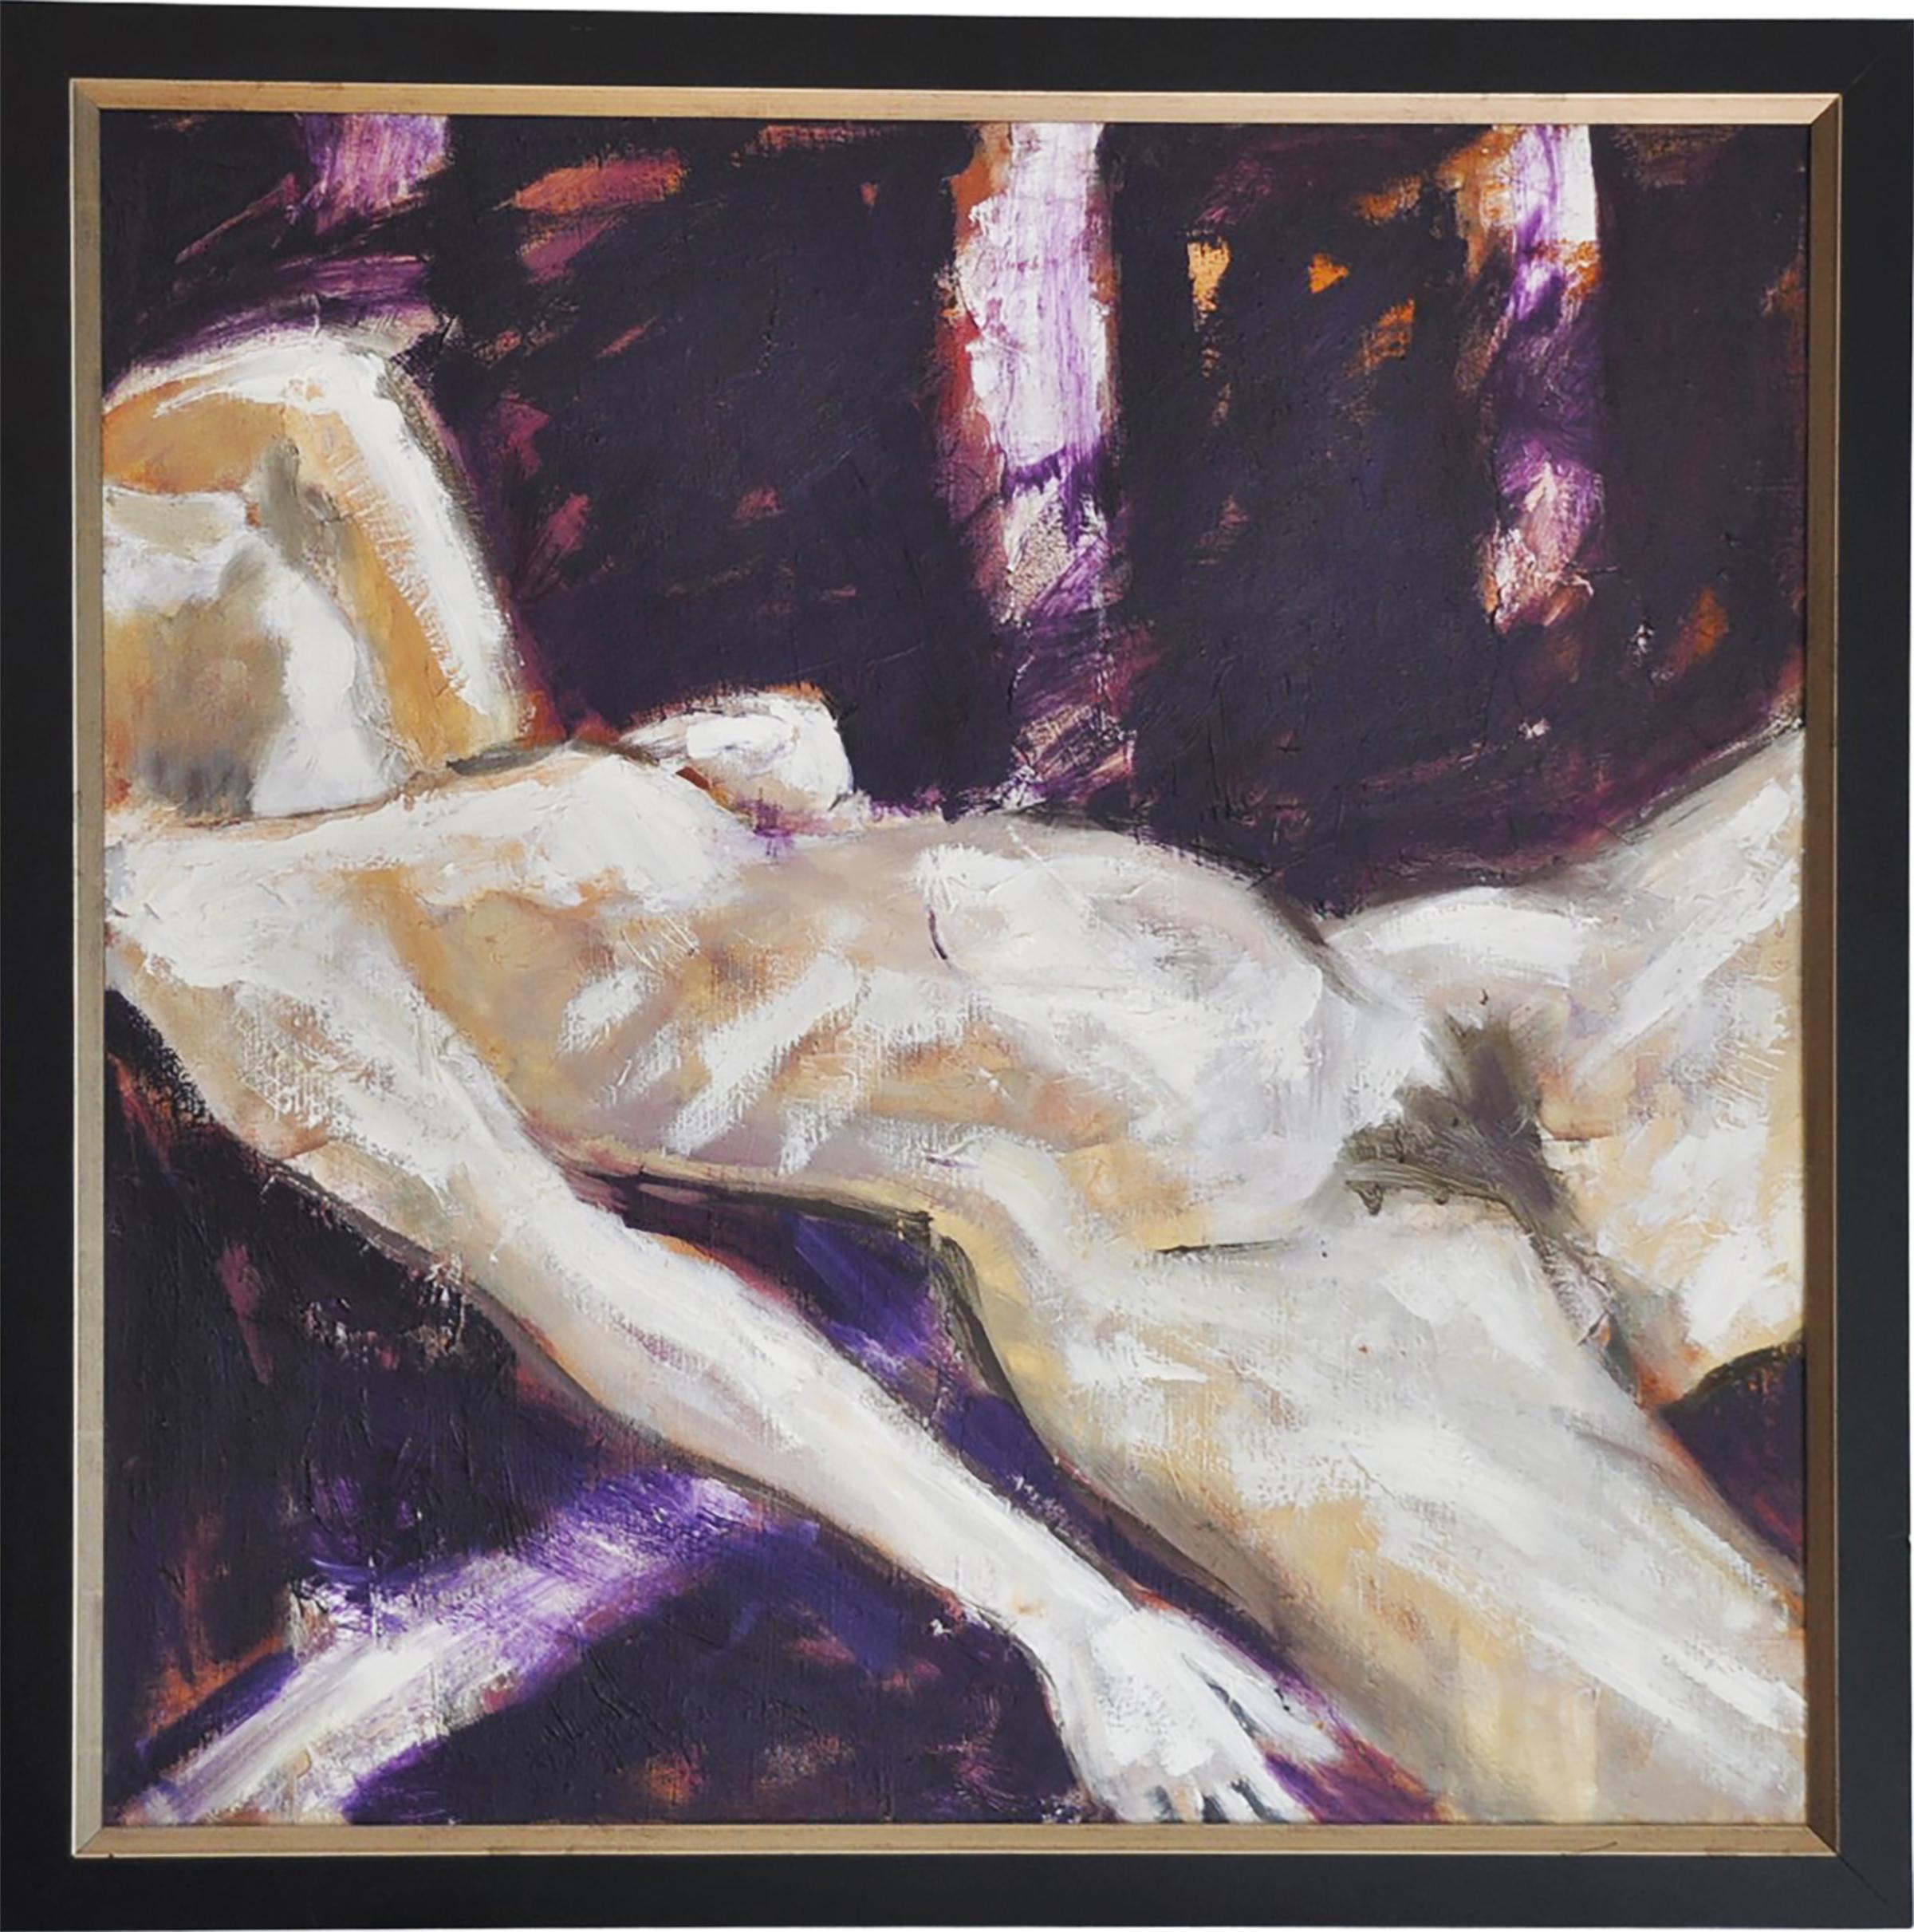 "Sleep II" des zeitgenössischen rumänischen Malers Marcel Lupse ist ein expressionistisches Öl auf Leinwand, das einen liegenden Akt darstellt.

Marcel Lupse, geboren 1954, ist ein etablierter zeitgenössischer rumänischer Maler mit weit über 100